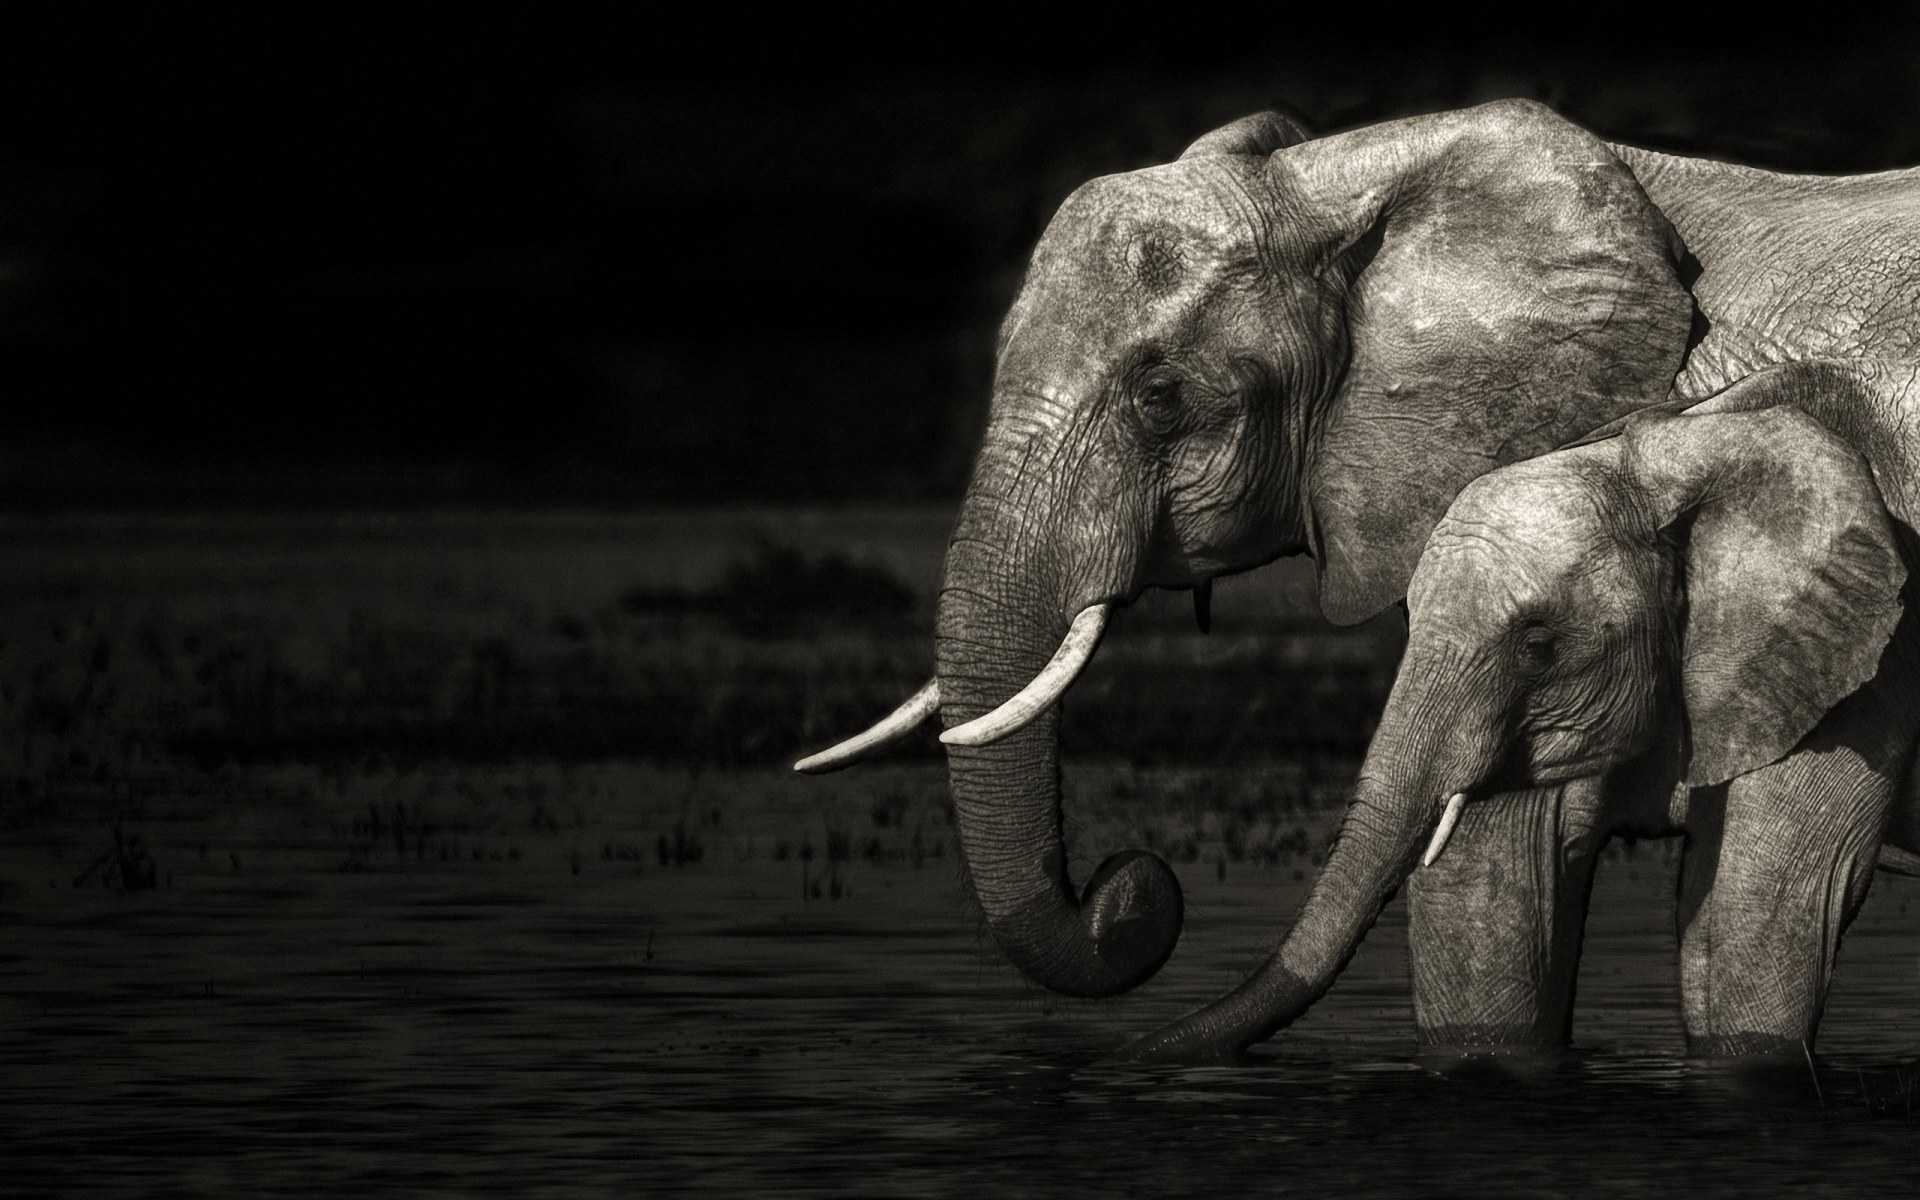 Elephant Art Full HD Long Wallpaper Tumblr Of Mobile For Desktop